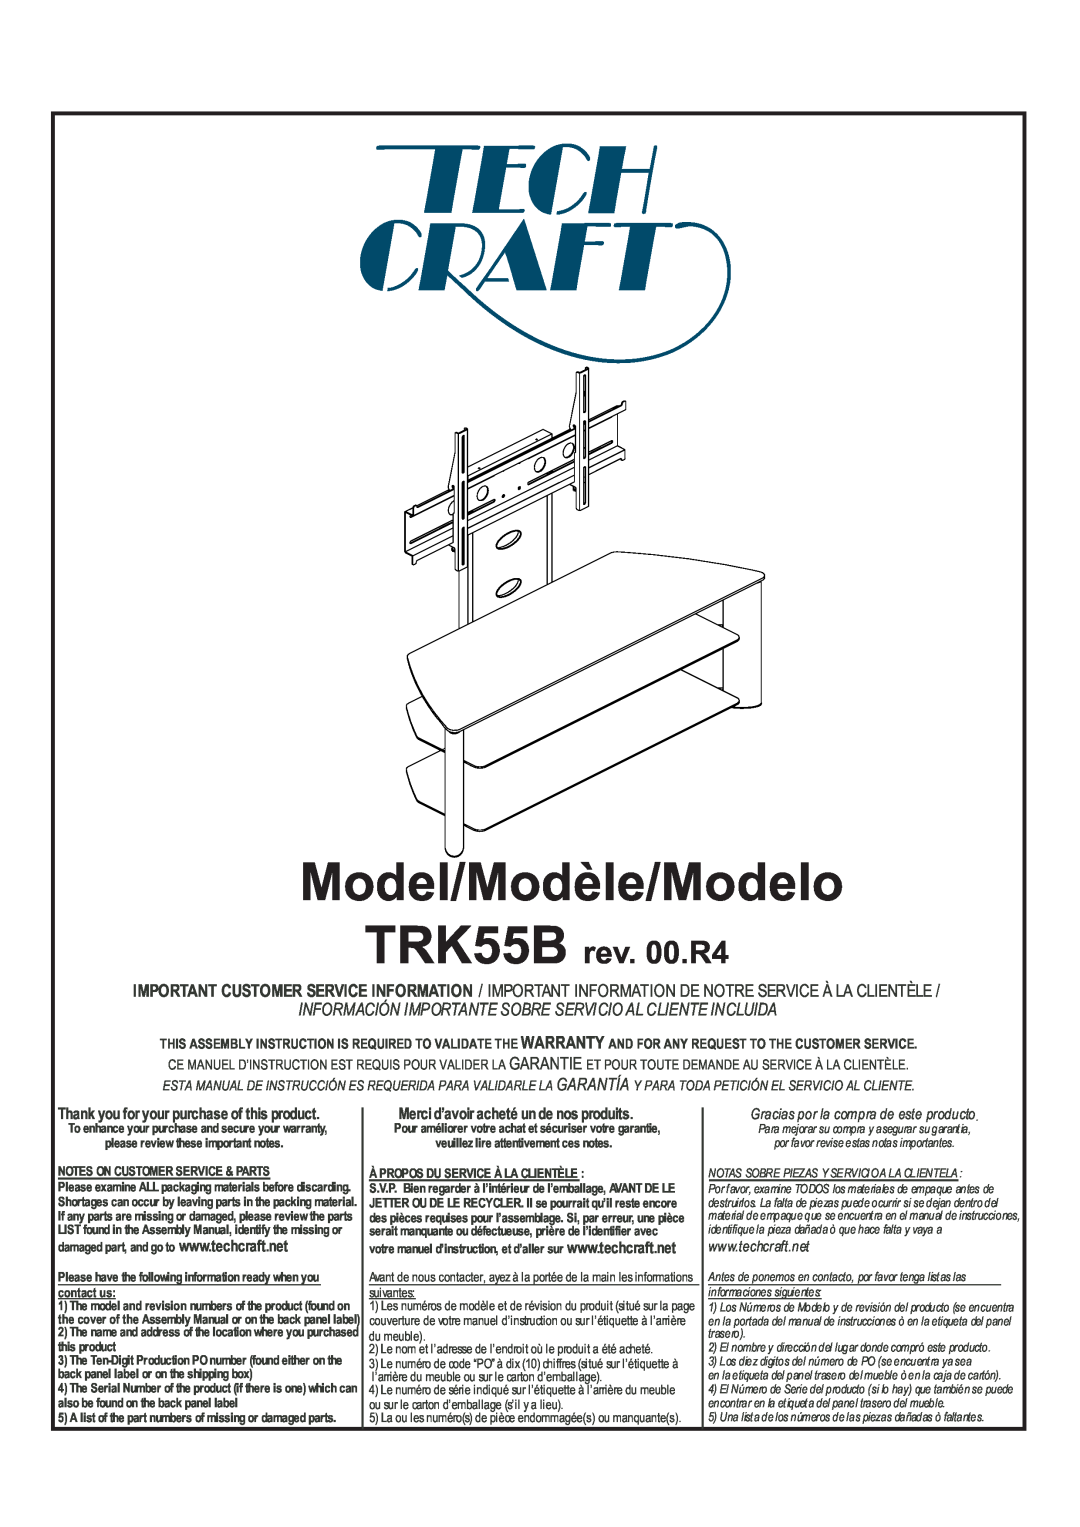 Tech Craft warranty Model/Modèle/Modelo, TRK55B rev. 00.R4, Información Importante Sobre Servicio Al Cliente Incluida 